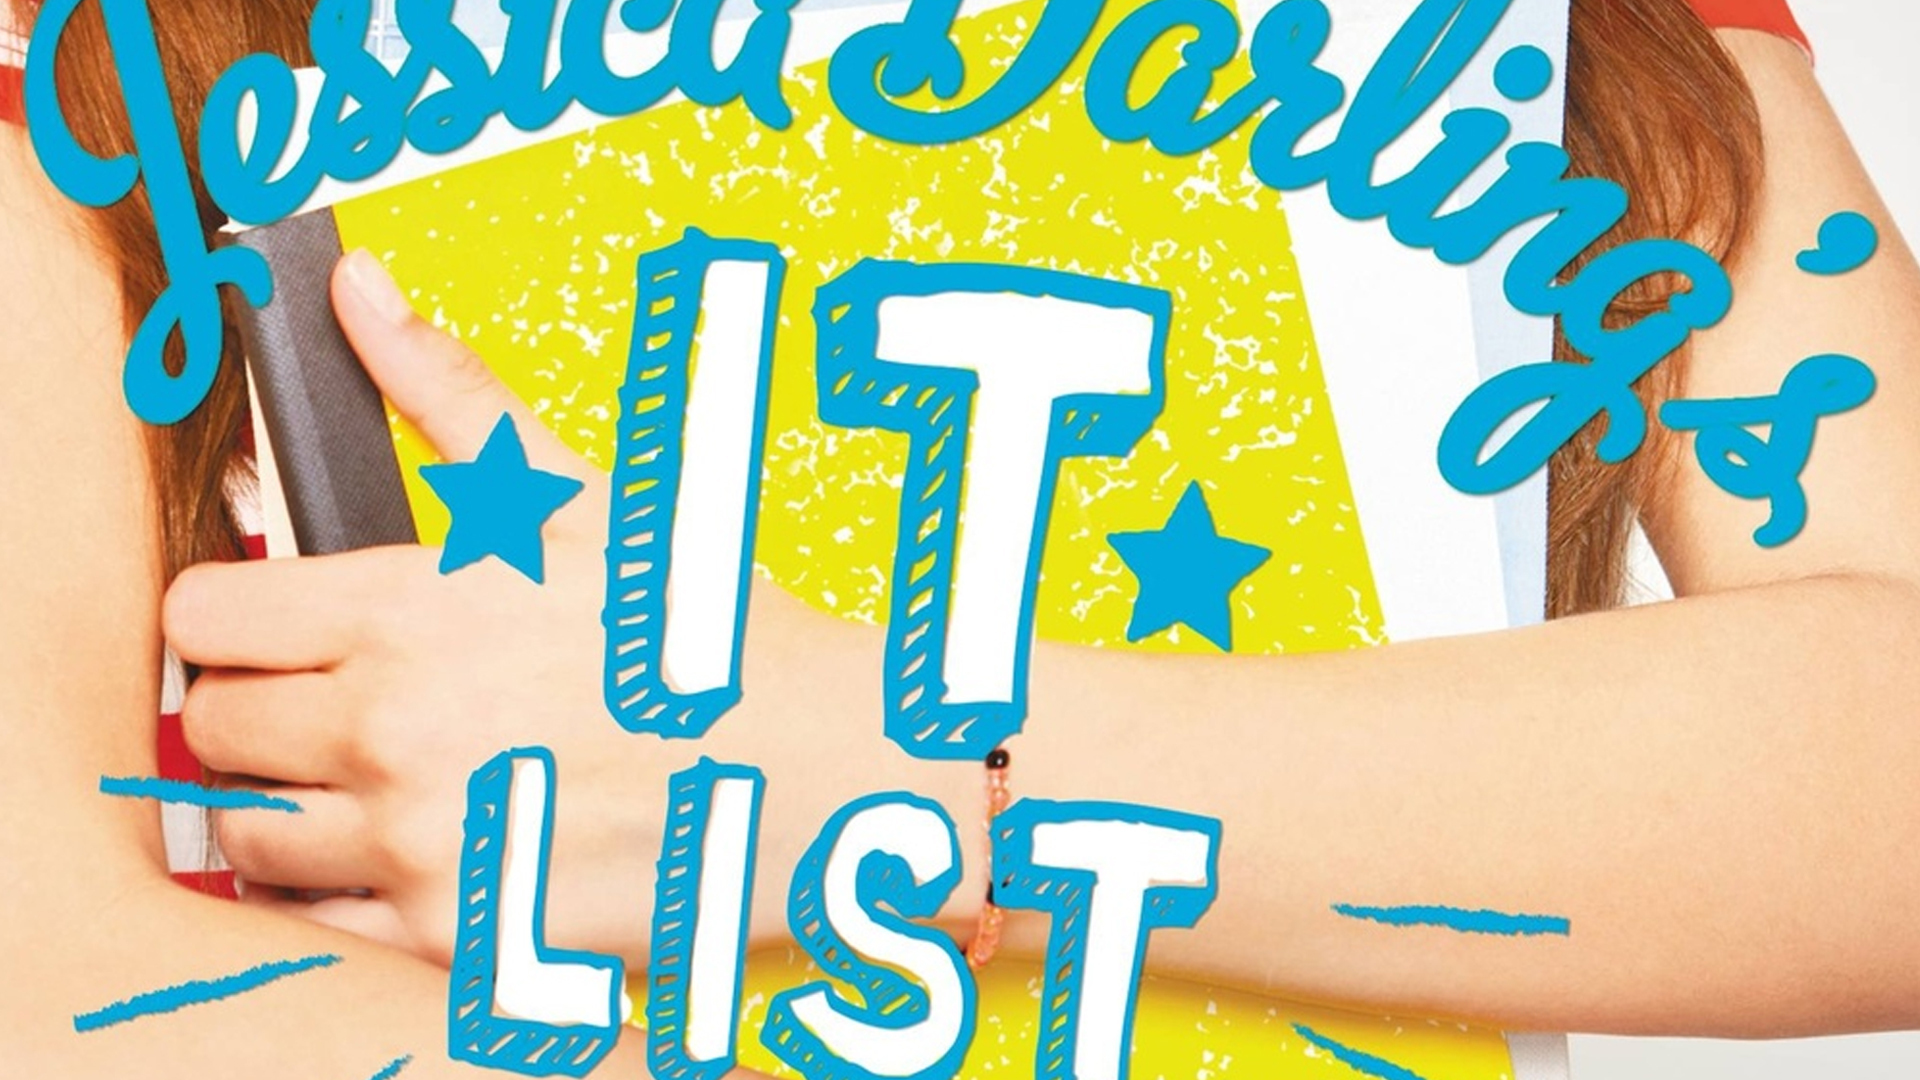 Jessica Darling's It List